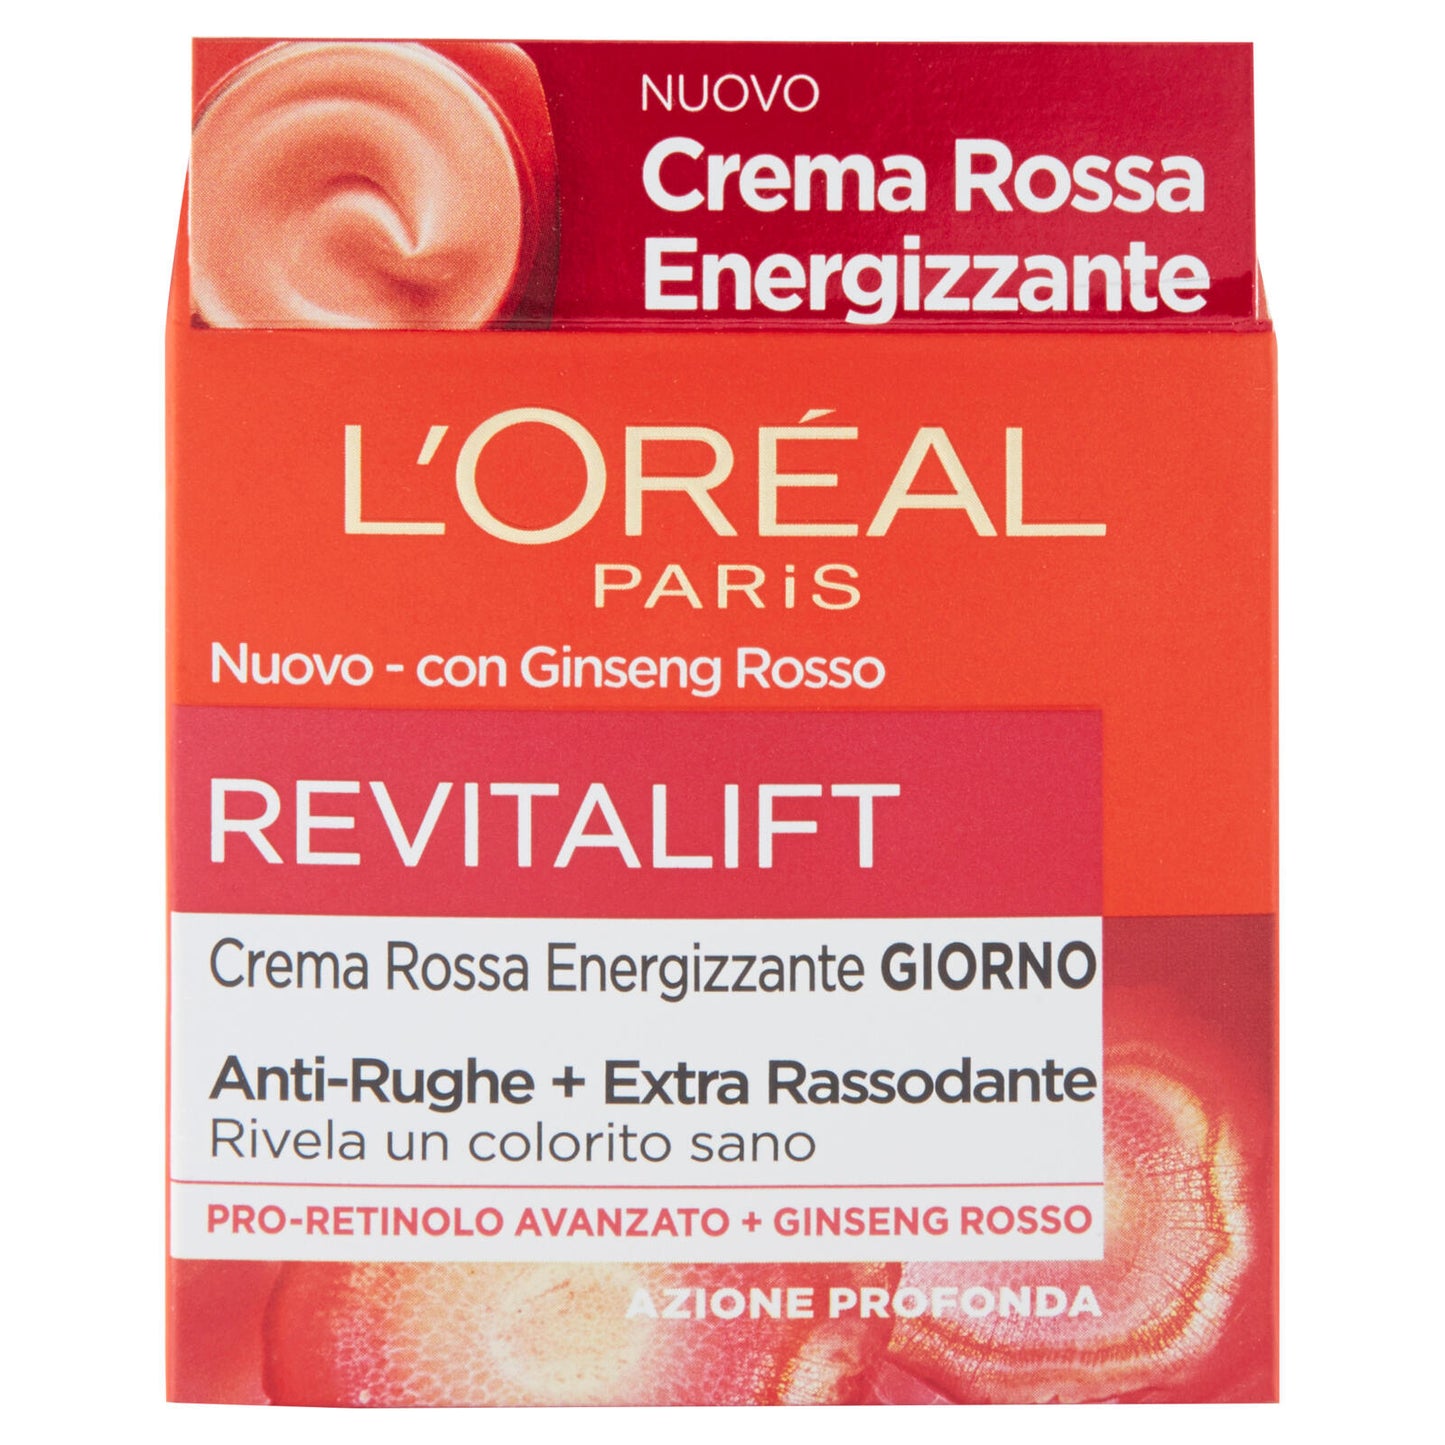 L'Oréal Paris Crema Viso giorno anti-rughe Revitalift con Ginseng Rosso e Proretinolo avanzato, 50ml